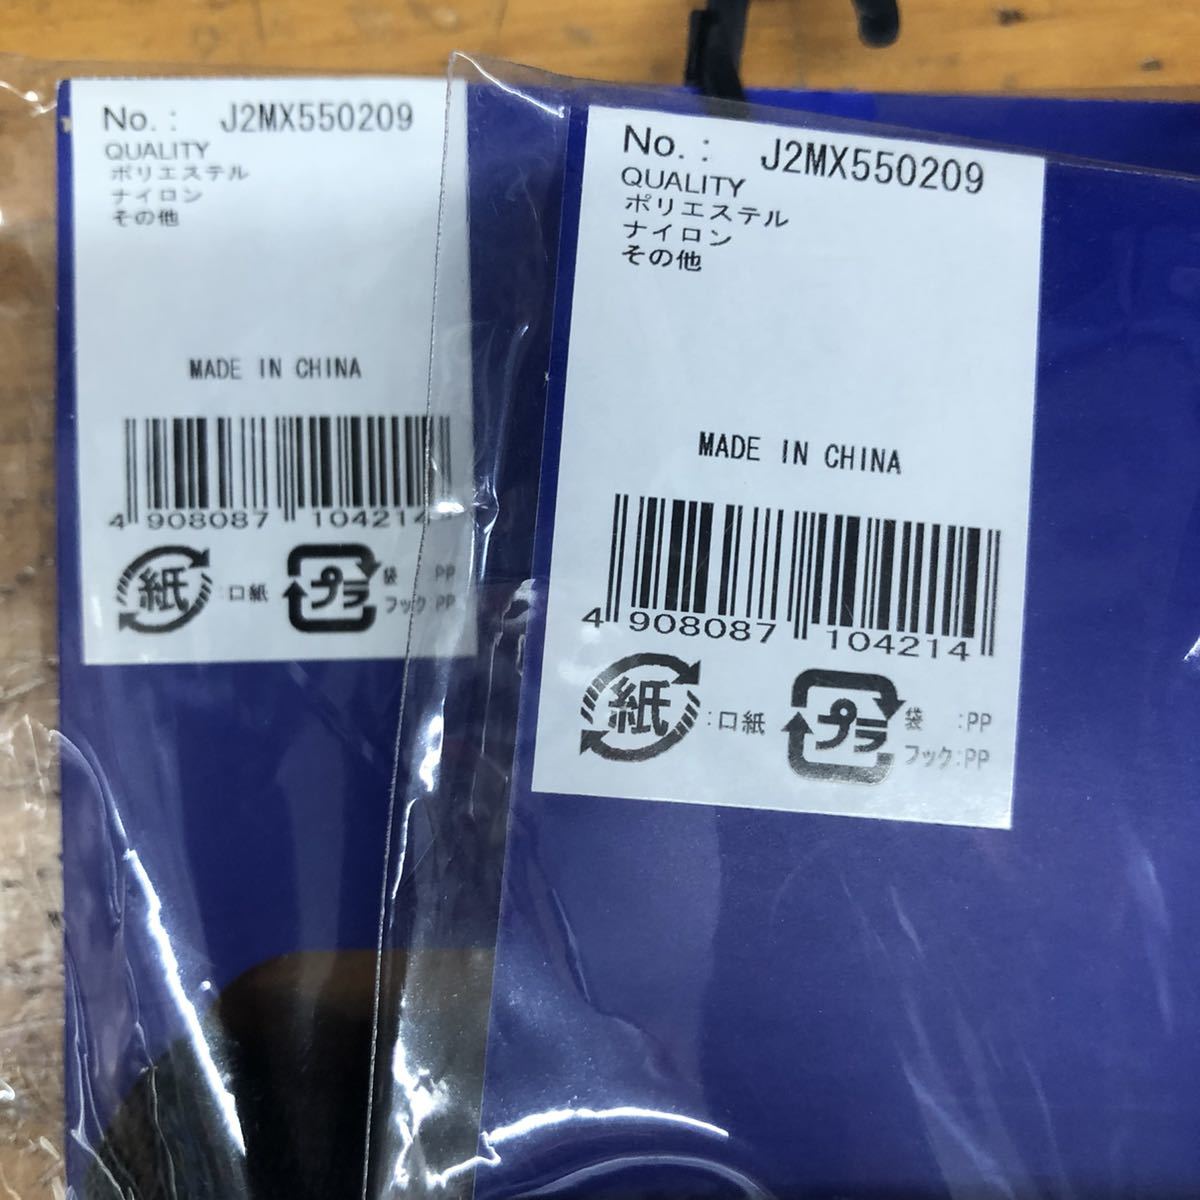 25.26.27cm обычная цена 3740 иен 2 пар комплект Mizuno 2P носки носки черный чёрный бег скольжение прекращение спорт мужской наземный 